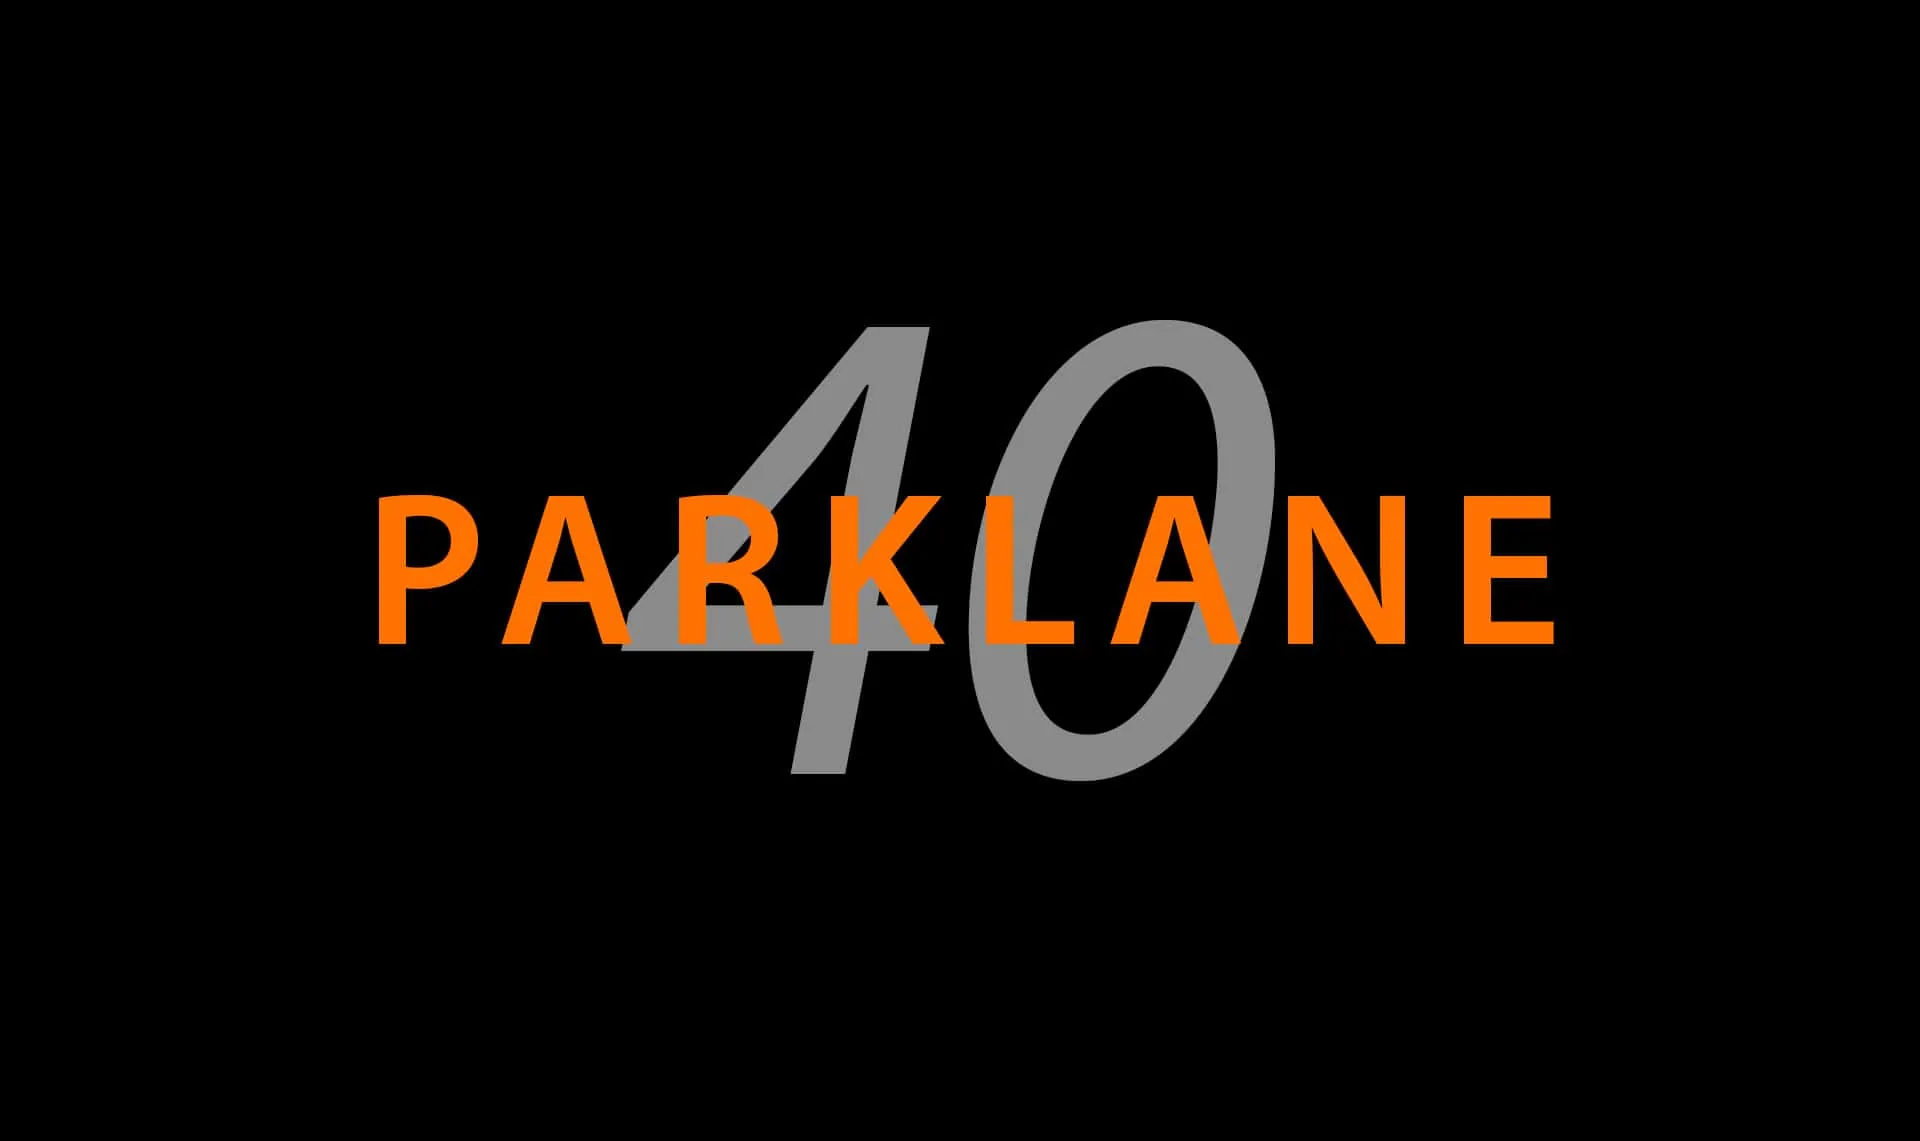 40ParkLane Massachusetts Digital Marketing Agency